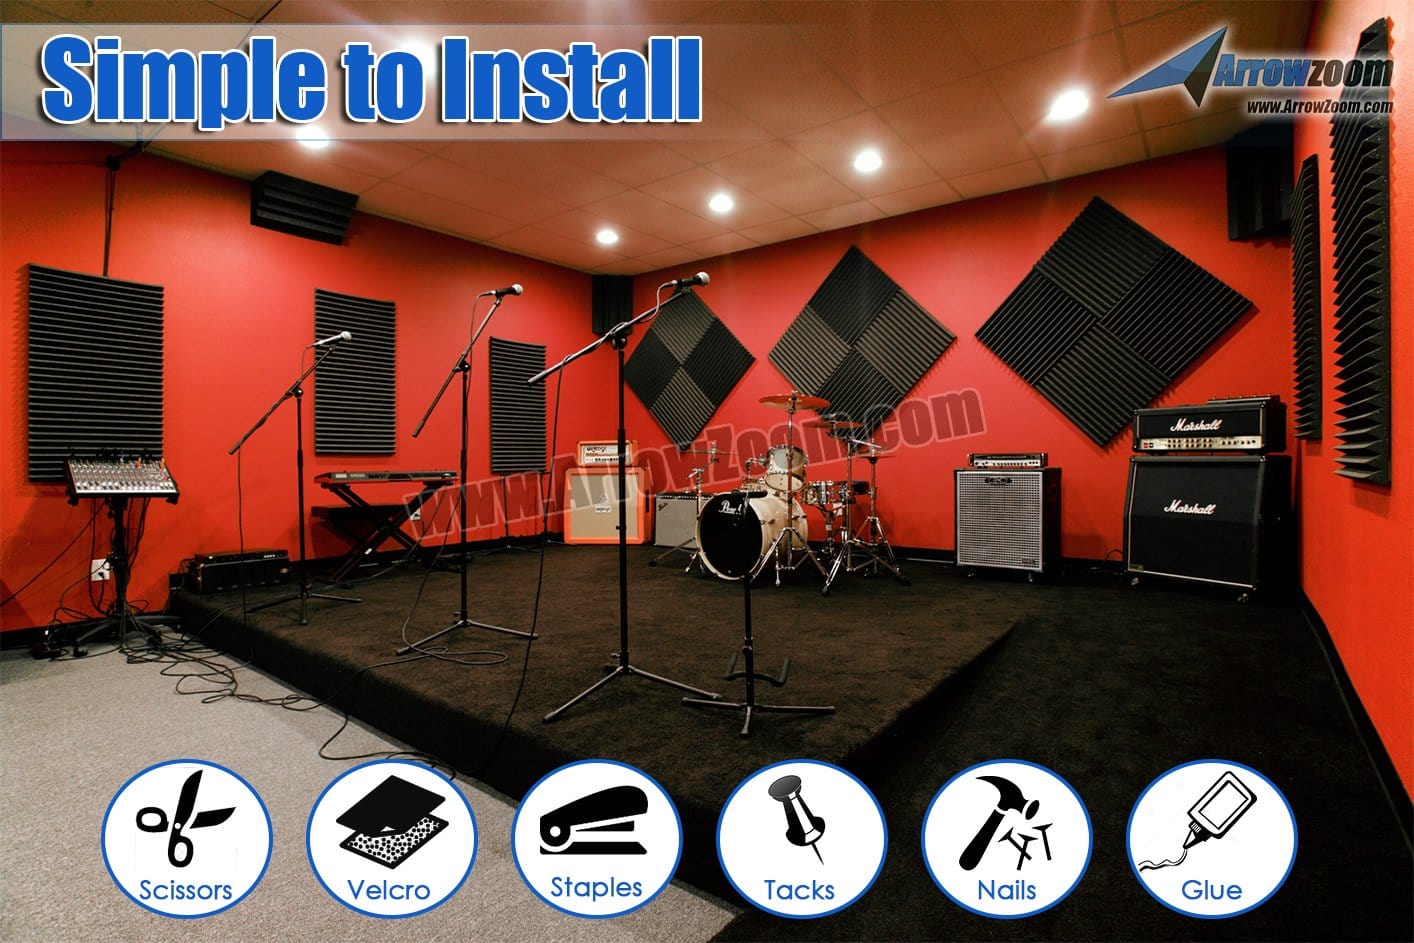 New 48 pcs Wedge Tiles Acoustic Panels Sound Absorption Studio Soundproof Foam 7 Colors KK1134